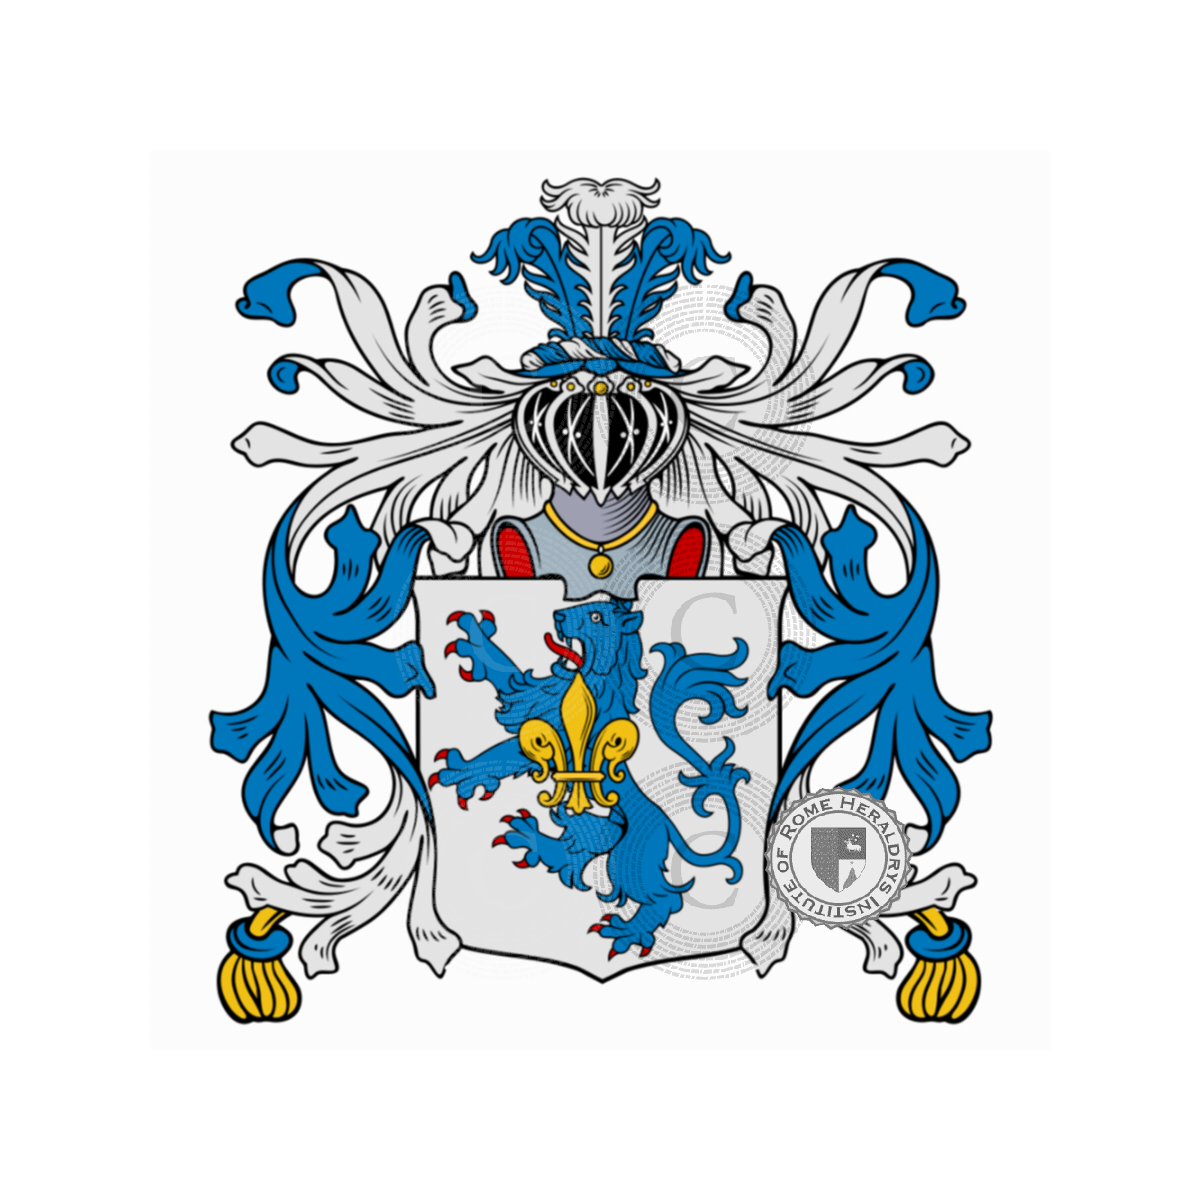 Coat of arms of familyFera